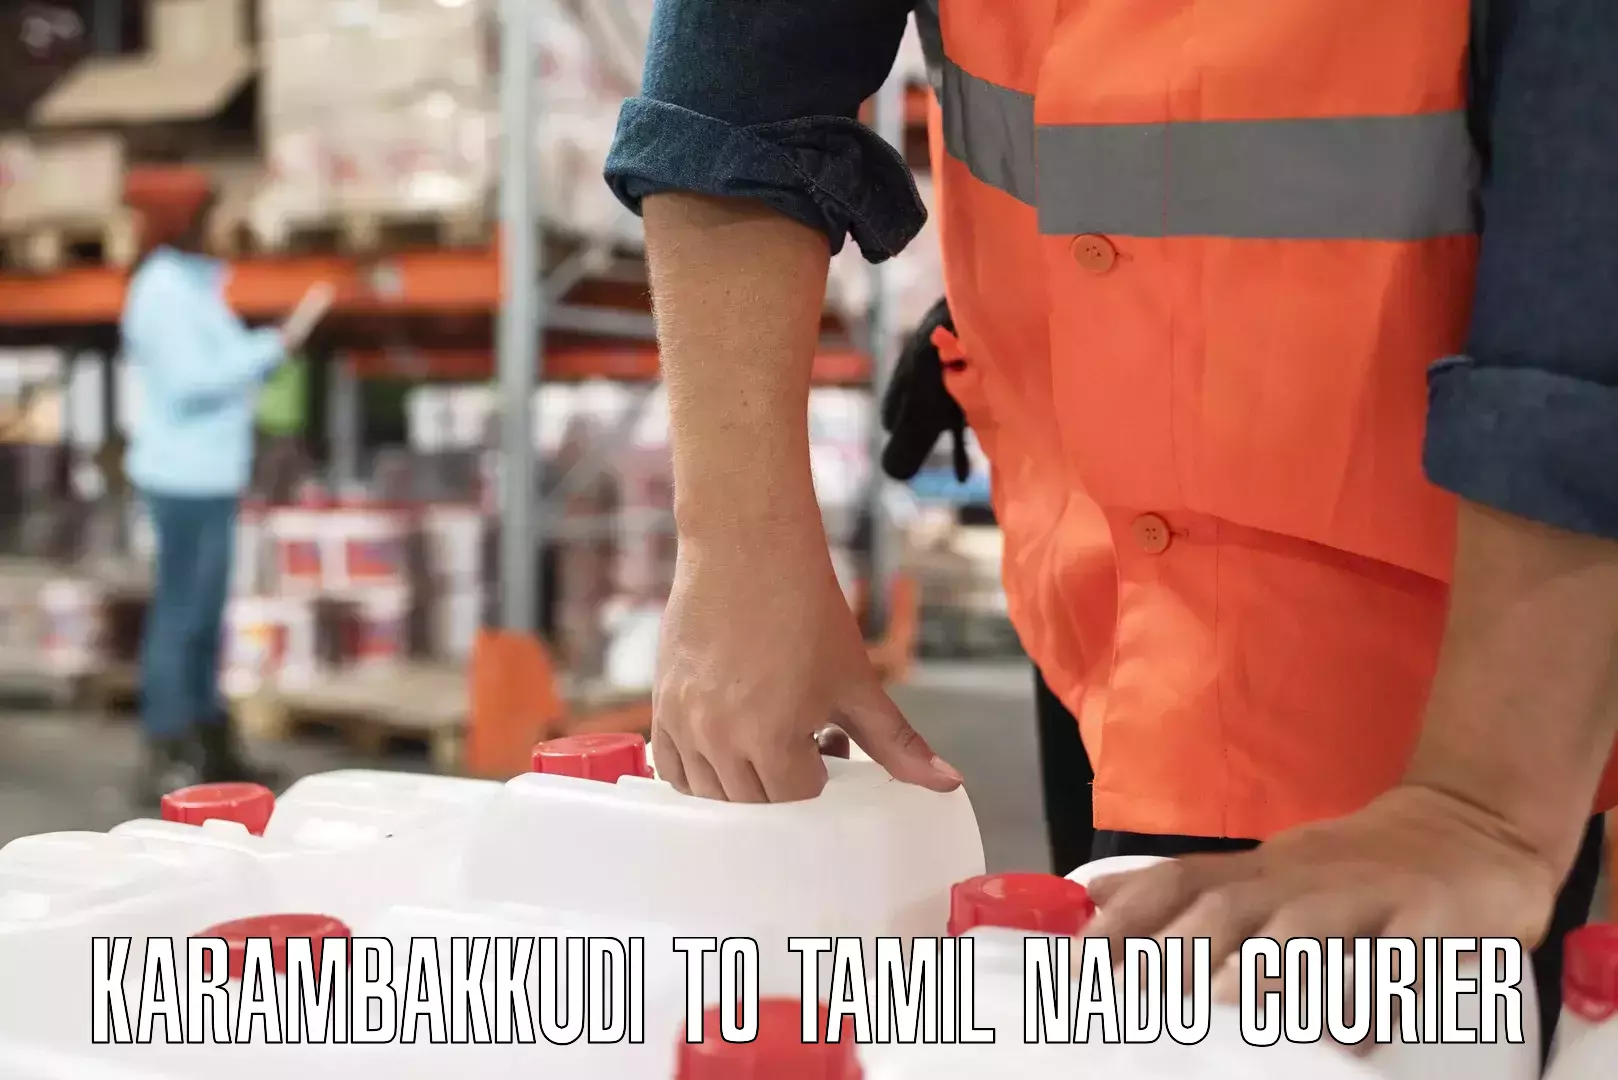 Tech-enabled shipping Karambakkudi to Mayiladuthurai